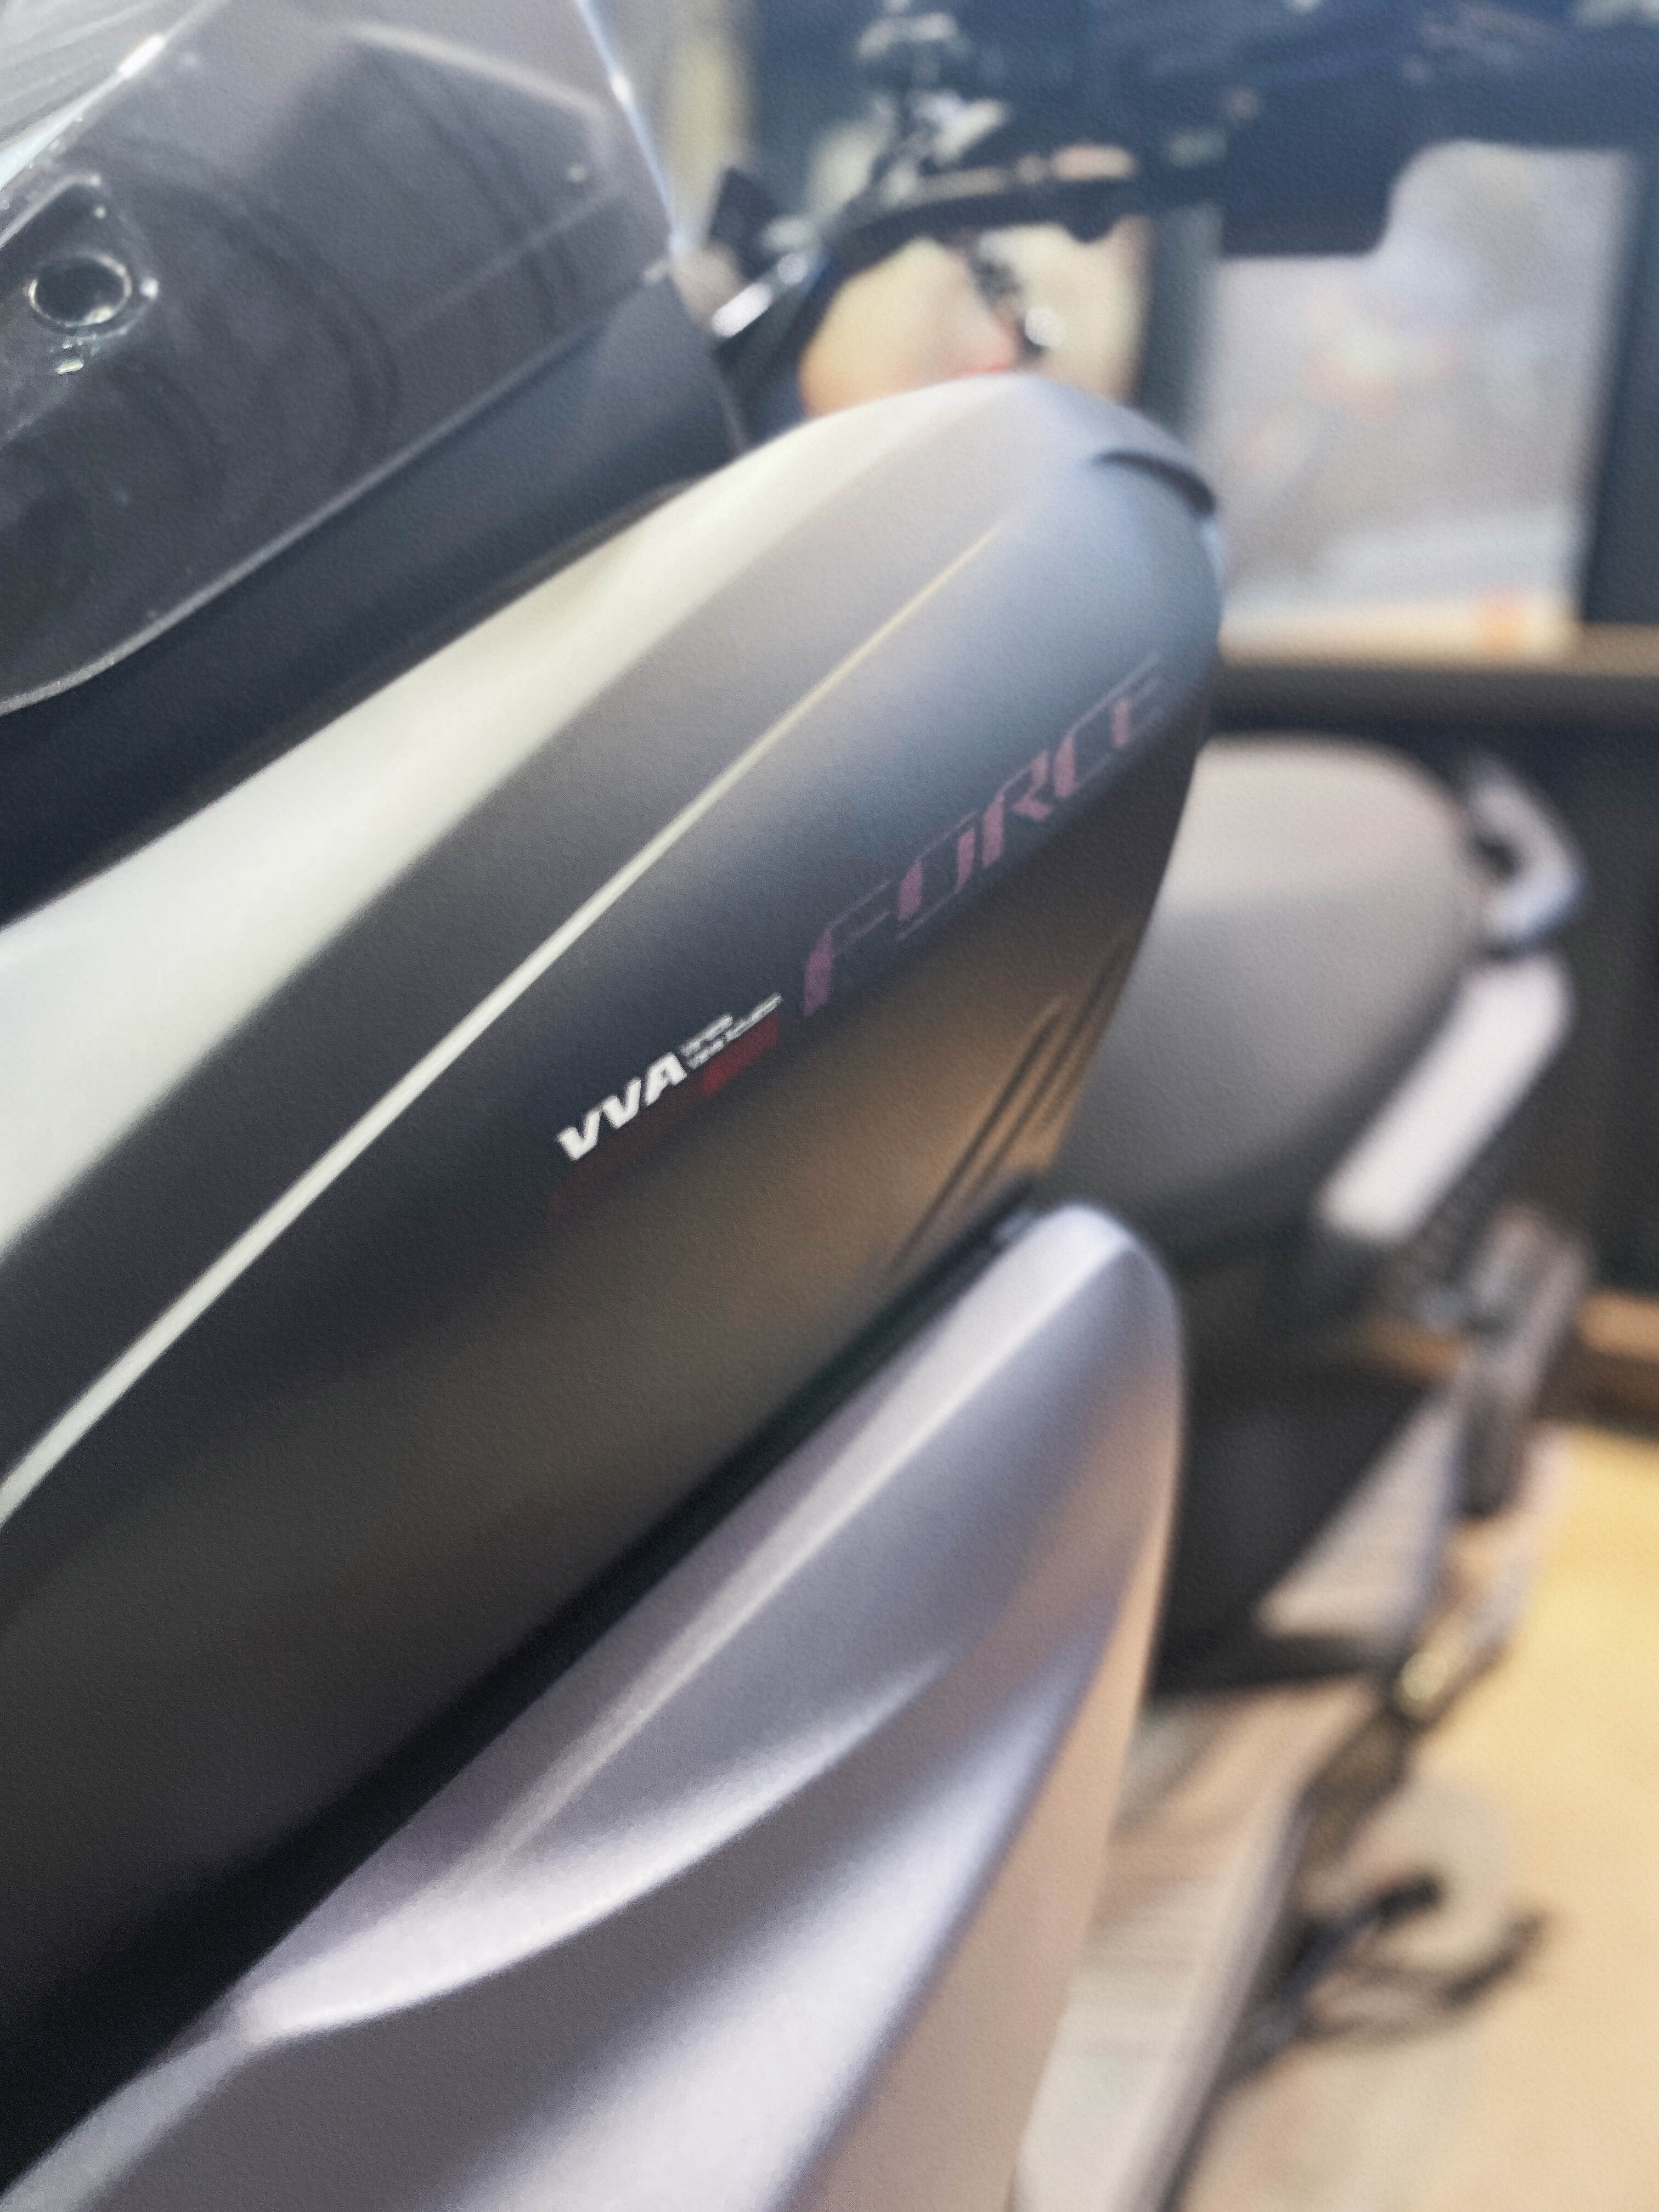 YAMAHA FORCE - 中古/二手車出售中 2023 Yamaha Force 2.0 極新車 里程一千出 | 繪馬重型機車股份有限公司